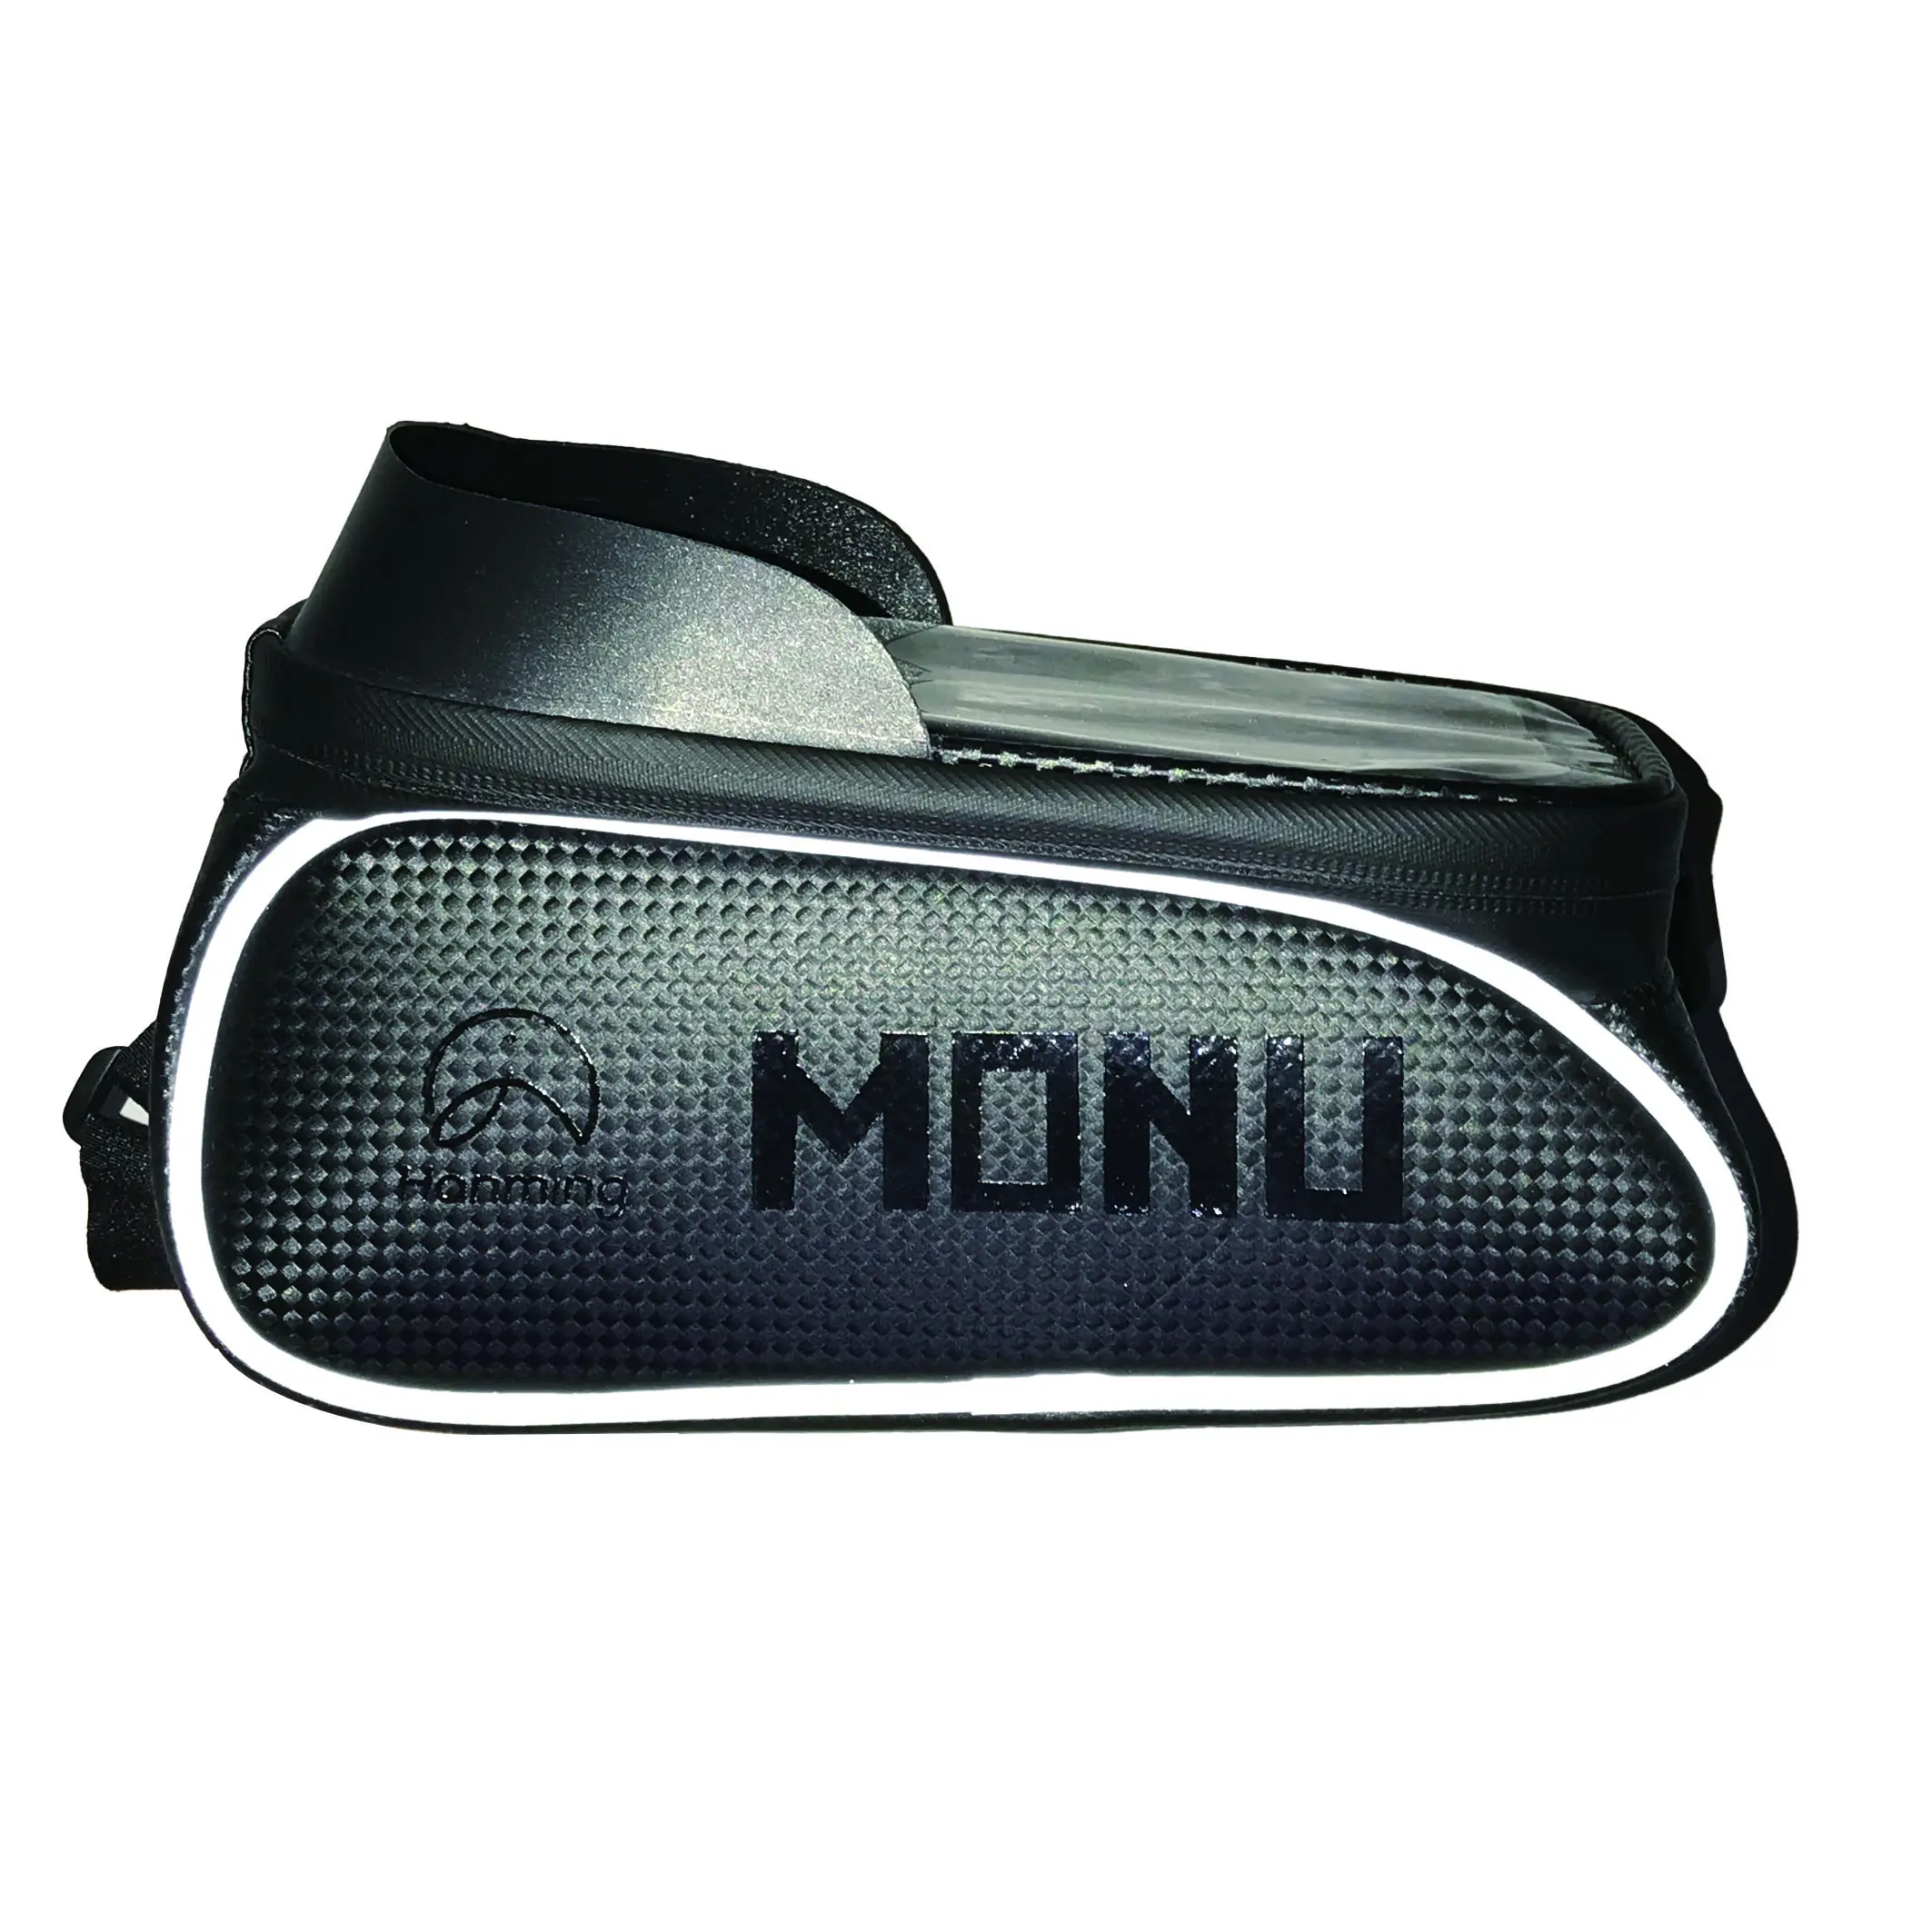 Monu Bicycle Bag Road Bike Mountain Bike Rainproof Phone Holder Touch Screen Black Bike Frame Bag